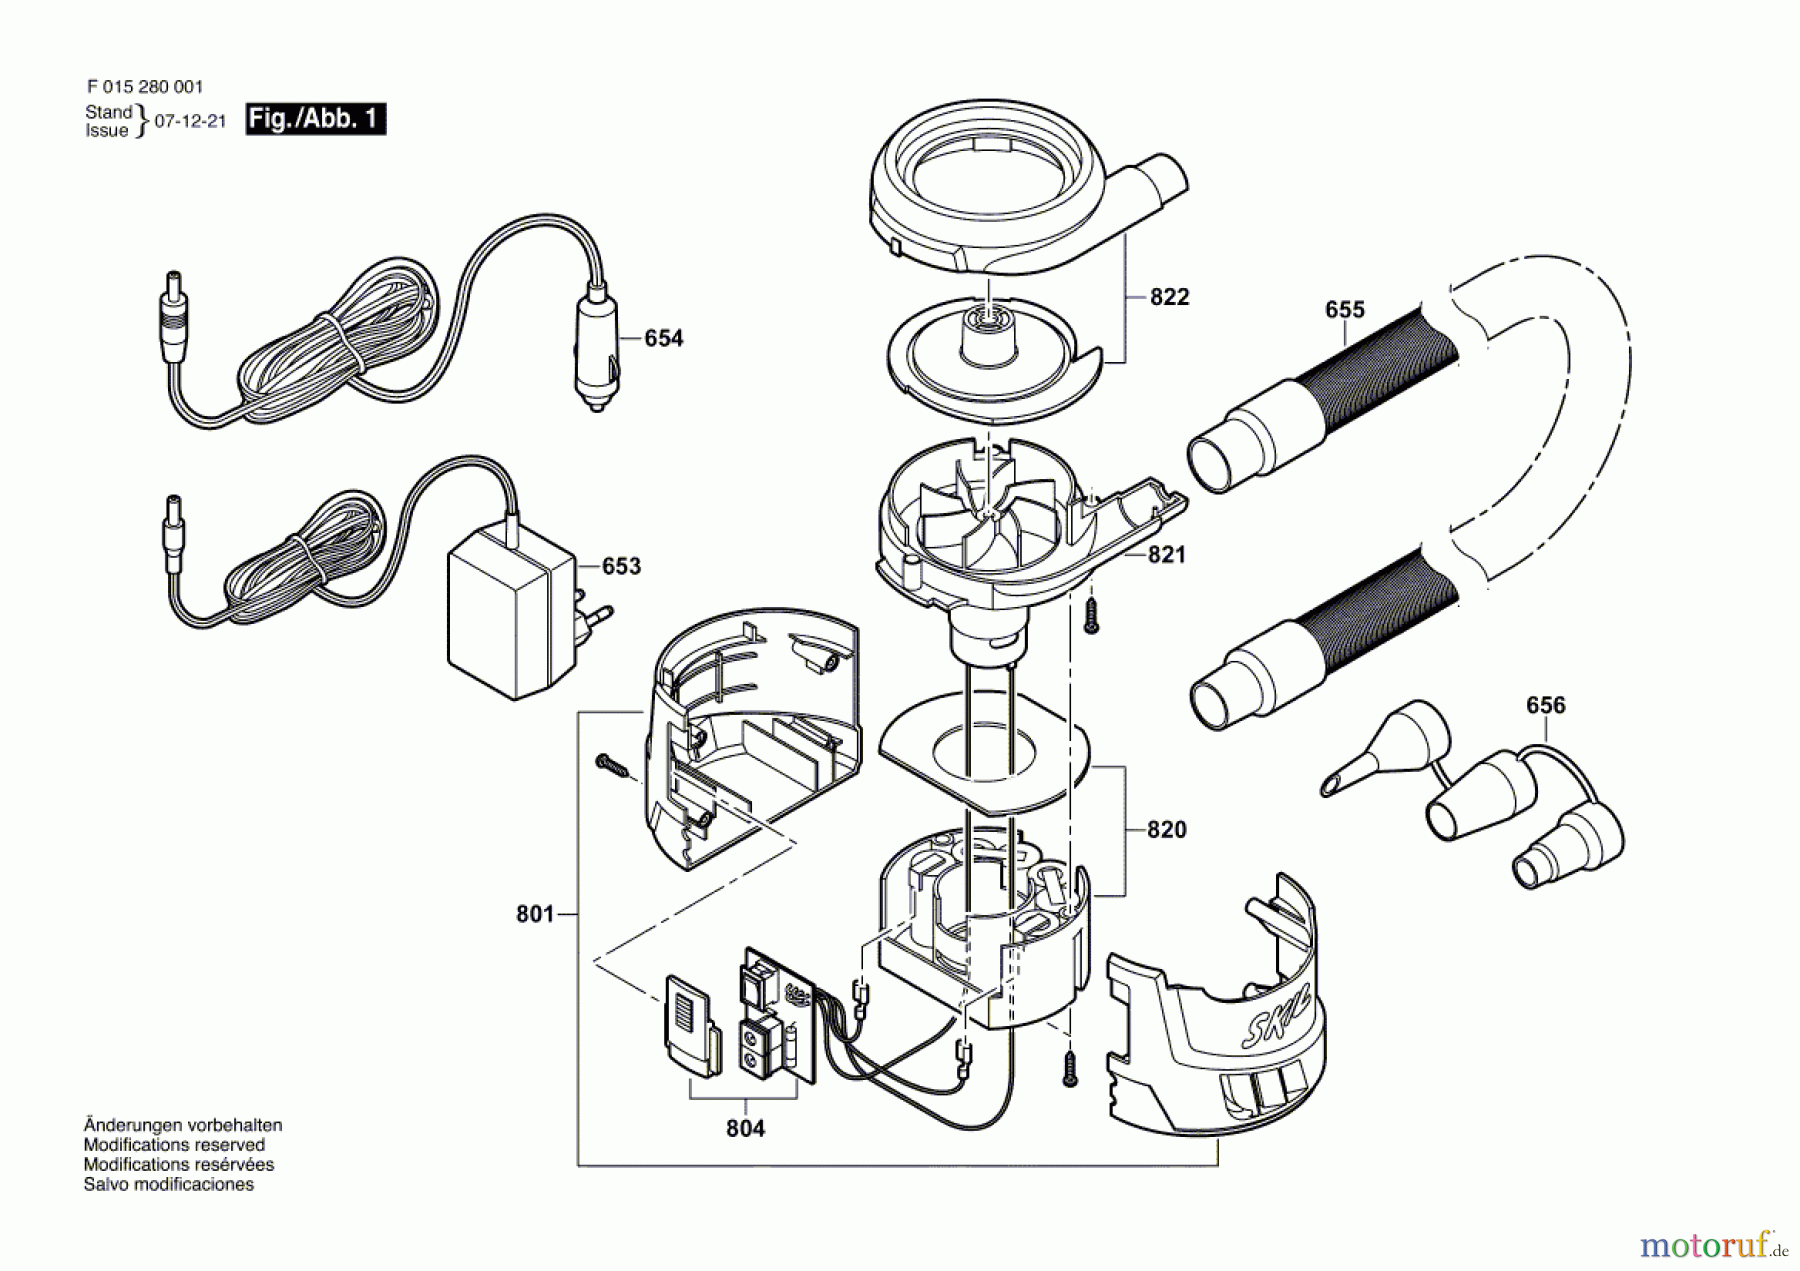  Bosch Werkzeug Luftpumpe 2800 Seite 1